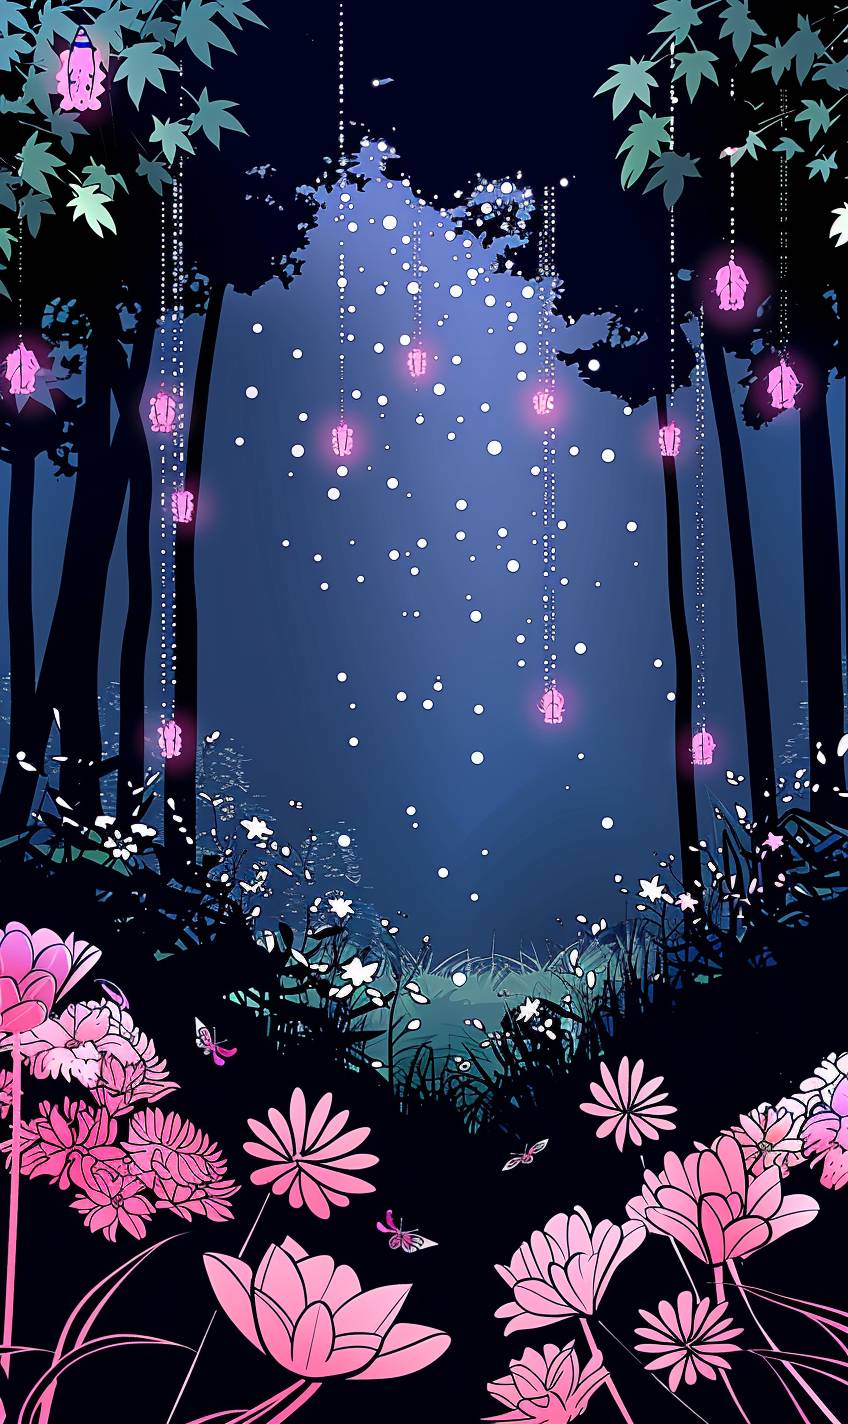 輝く植物、幻想的な生物、そよ風に包まれた神秘な魔法の森、柔らかな月明かりが幻想的な雰囲気を作り出す